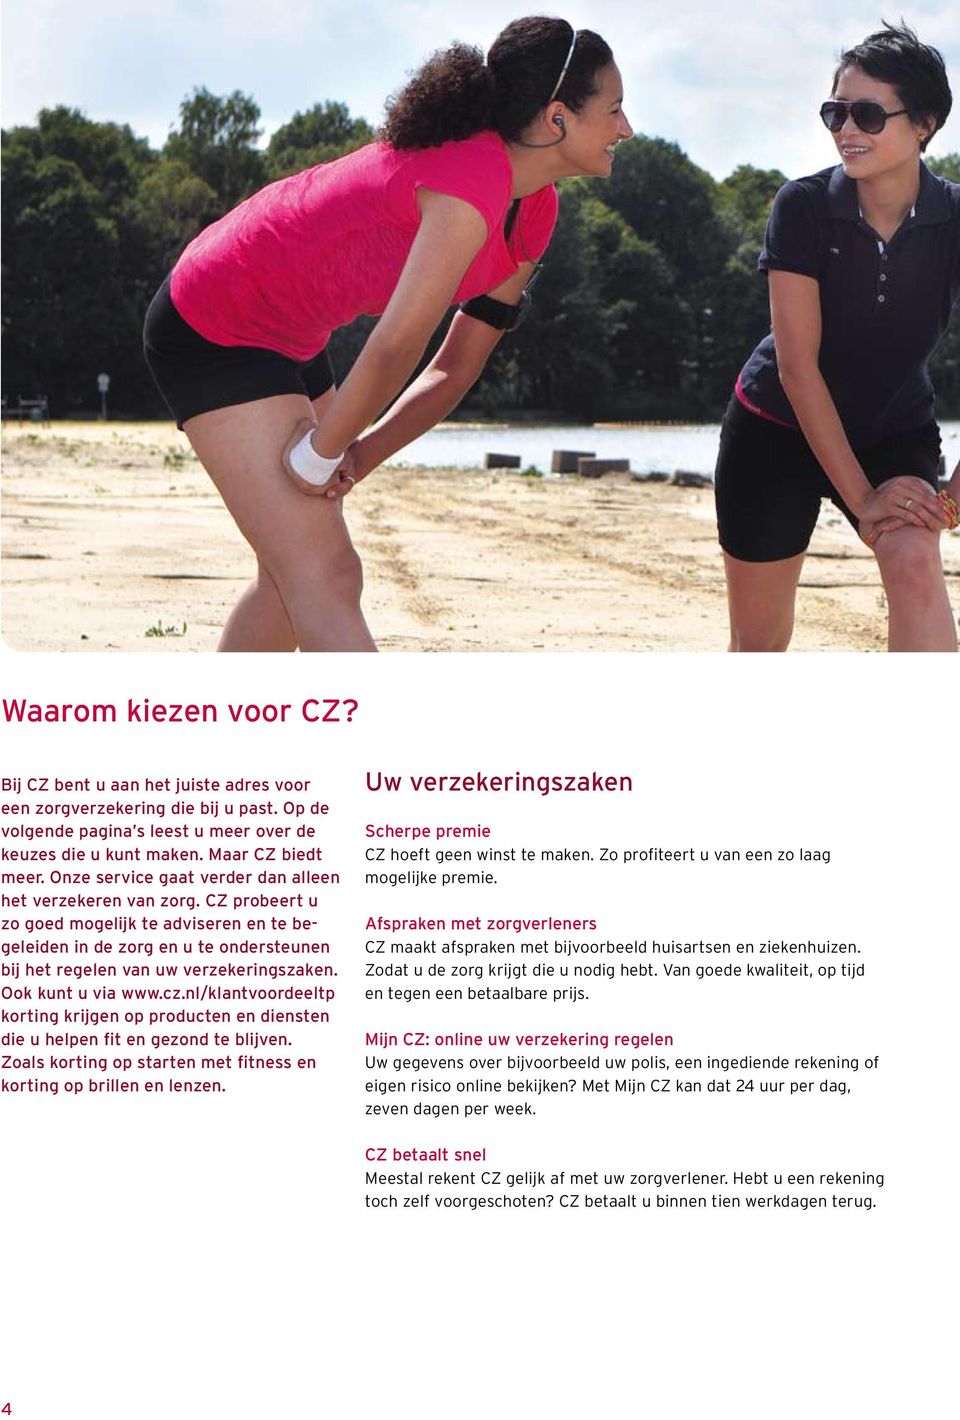 Ook kunt u via www.cz.nl/klantvoordeeltp korting krijgen op producten en diensten die u helpen fit en gezond te blijven. Zoals korting op starten met fitness en korting op brillen en lenzen.